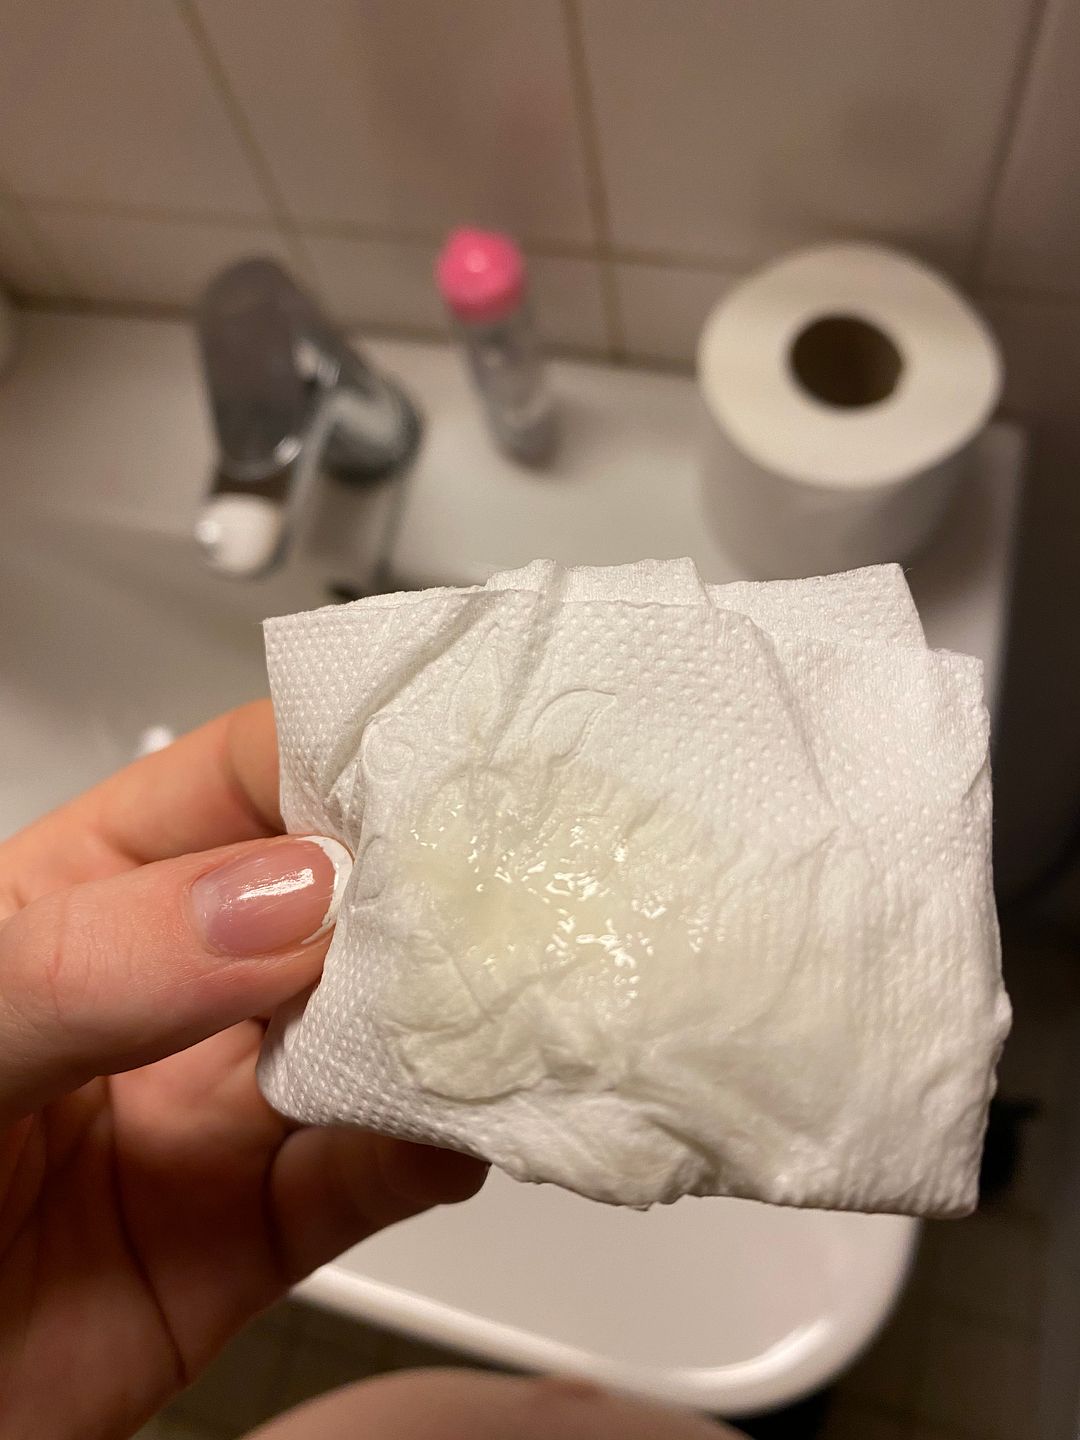 Cum On Toilet Paper erotic model